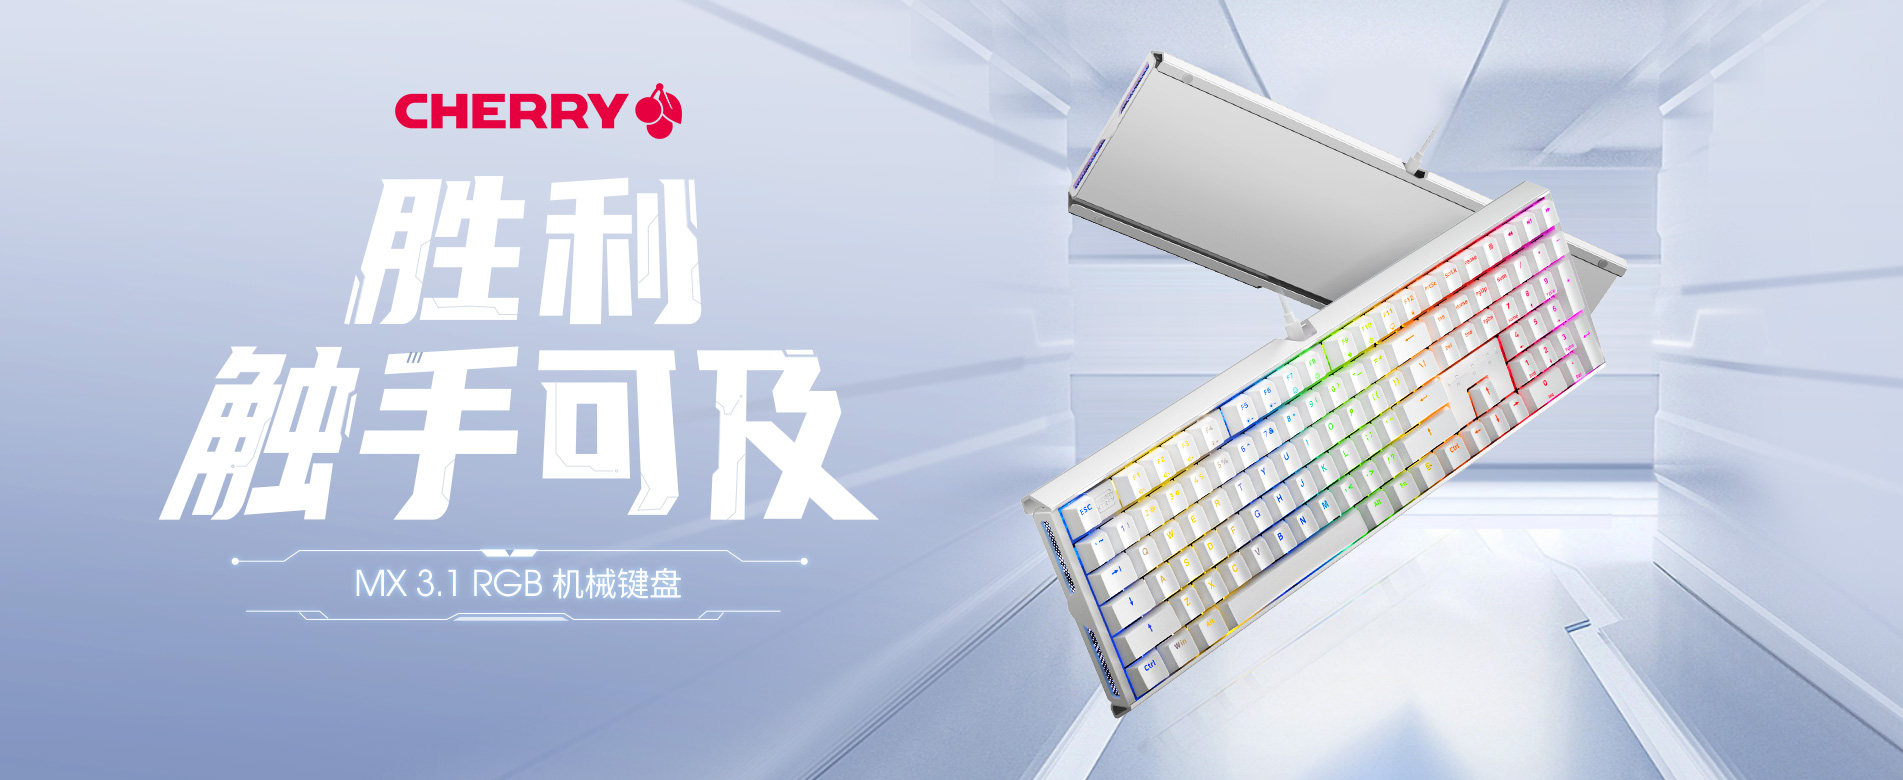 CHERRY MX 3.1系列键盘